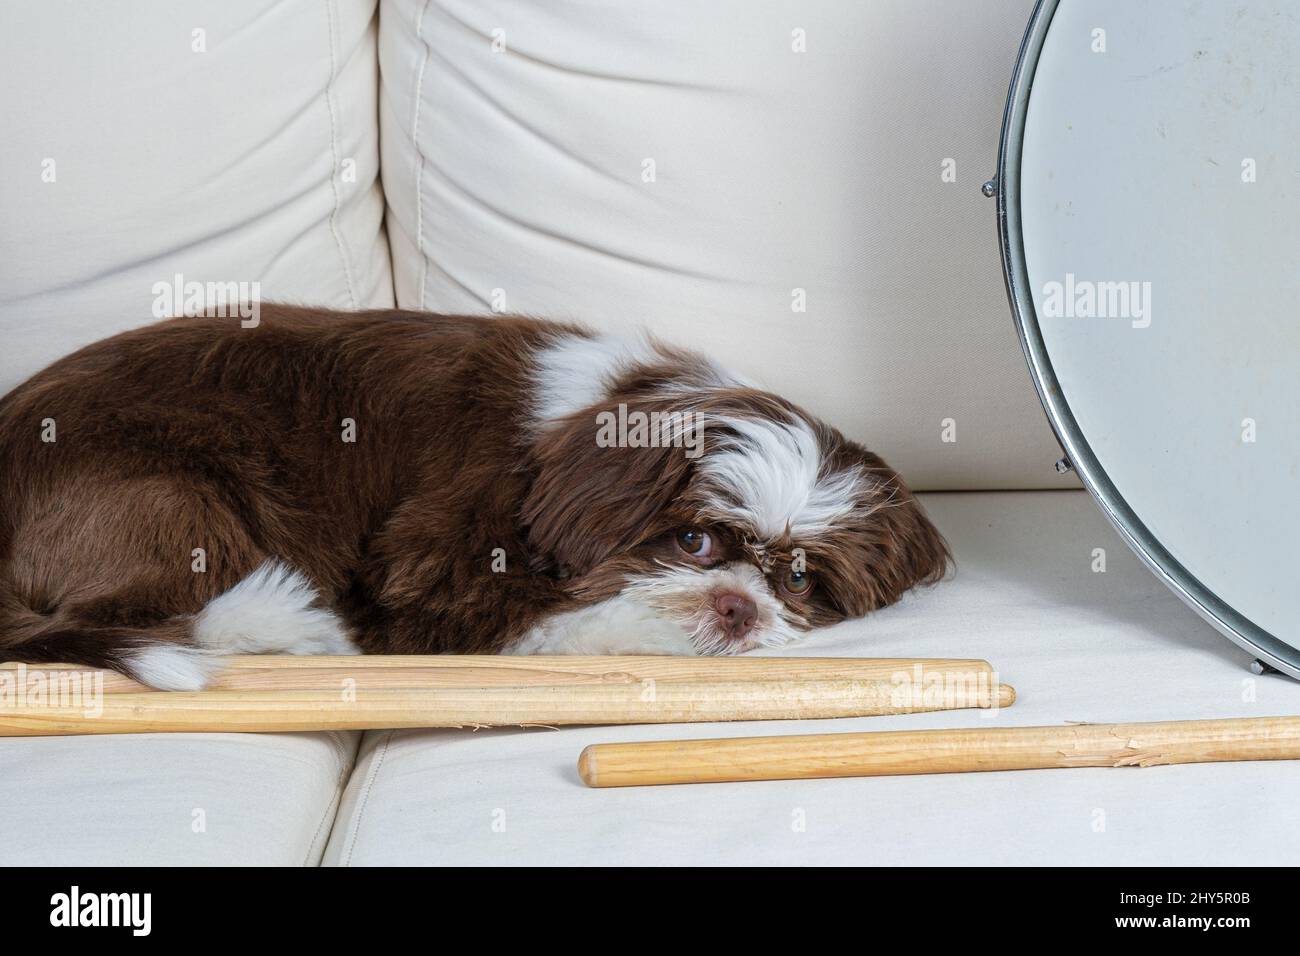 4 mese di età shih tzu cucciolo giace accanto a bastoncini e tamburo snare. Foto Stock